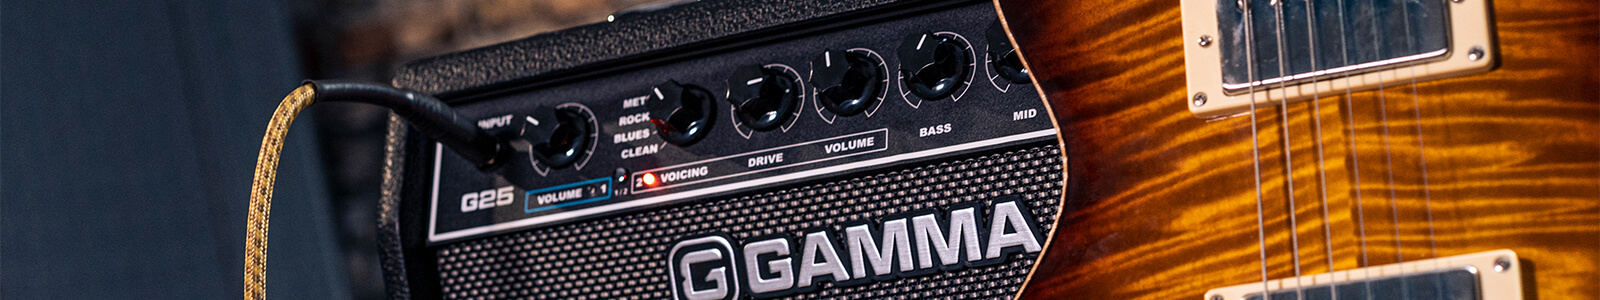 GAMMA G25 guitar amp control panel next to guitar